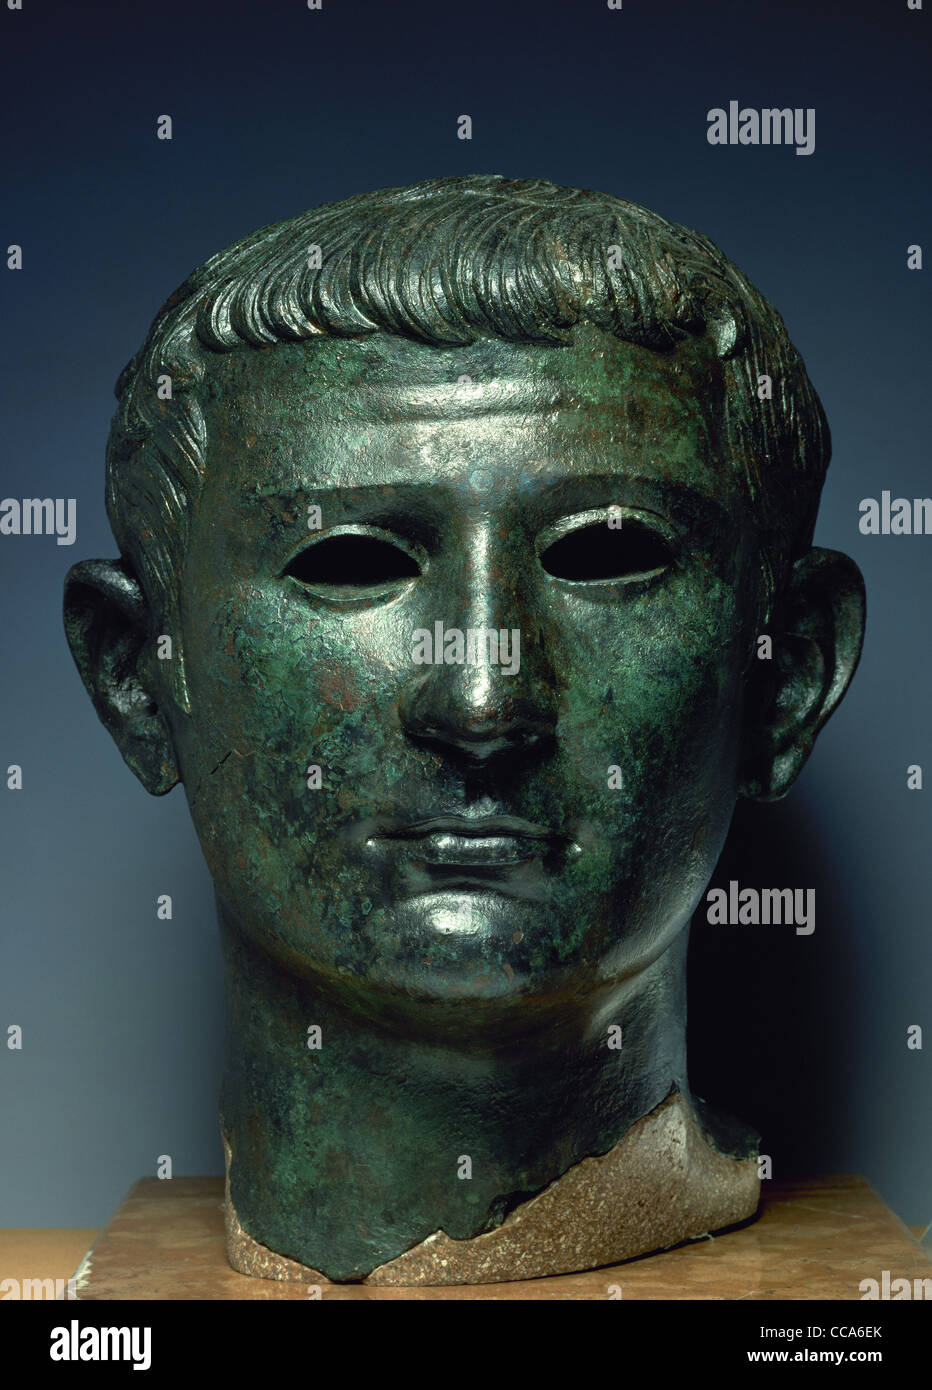 Tiberius (42 v. Chr. - 37 n. Chr.). Römischer Kaiser. Büste. Bronze. In Tiermes (Spanien) gefunden. Nationales Archäologisches Museum. Madrid. Spanien. Stockfoto